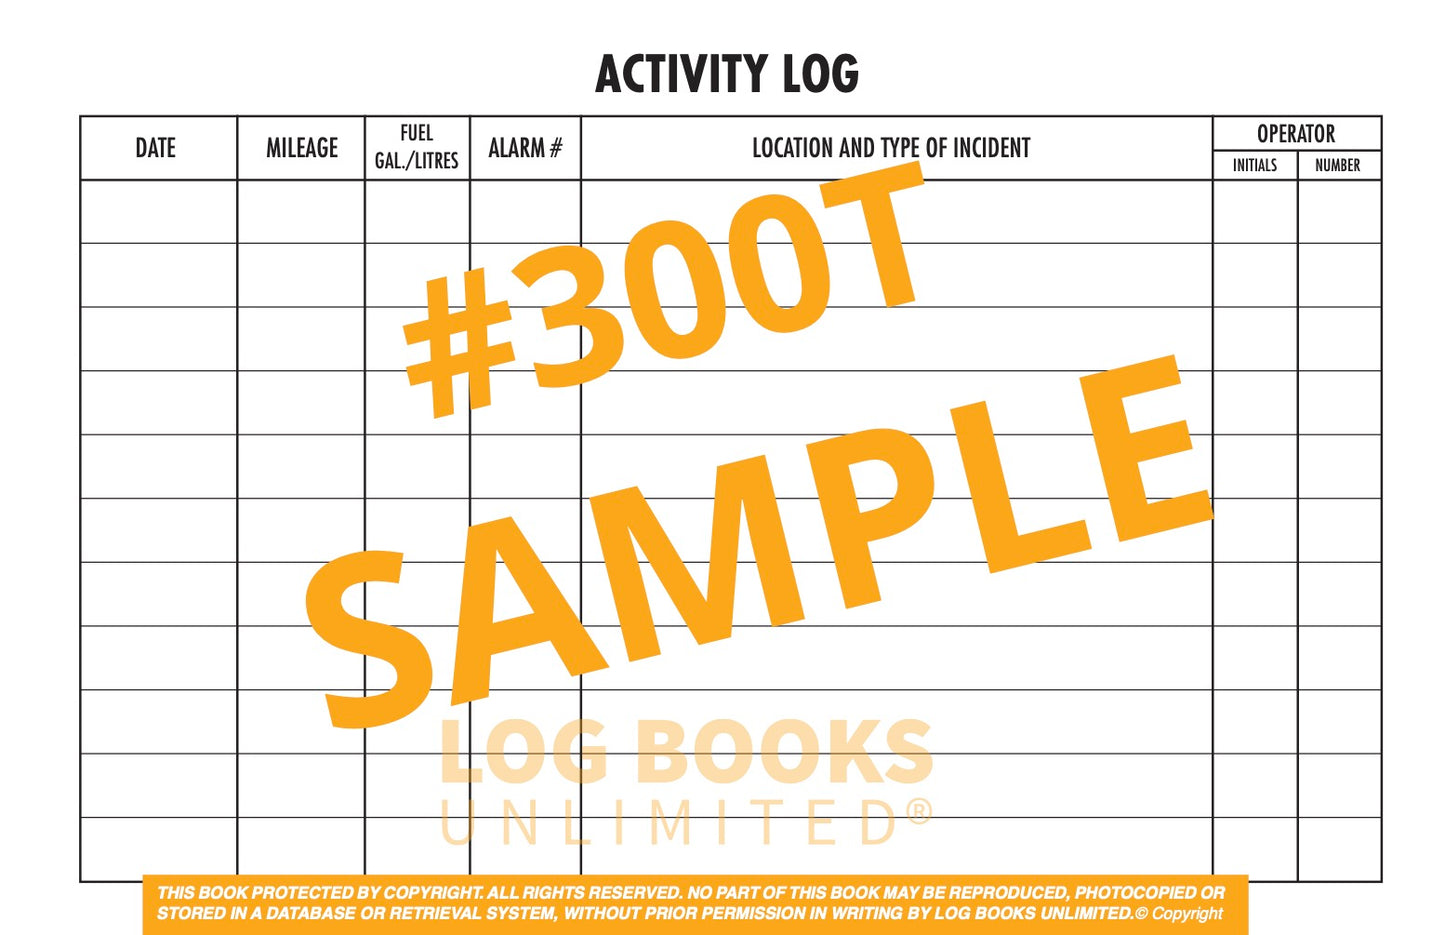 Fire Truck Activity Log Book - Sample